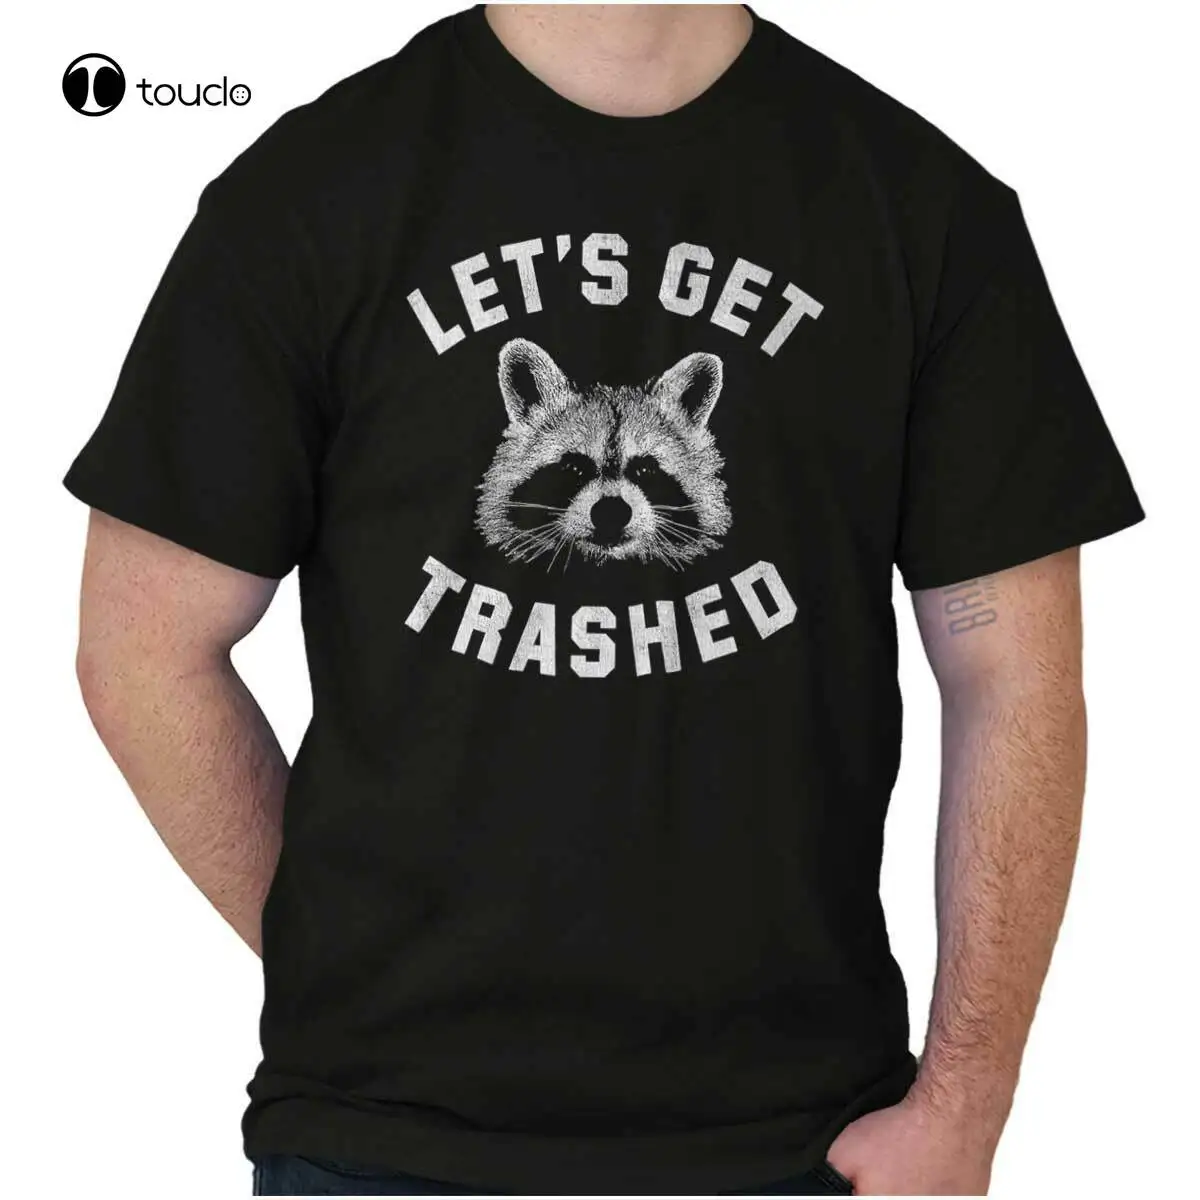 

Lets Get Trashed Raccoon Trash Panda Humor Adult Short Sleeve Crewneck Tee Cotton Tee Shirt Unisex